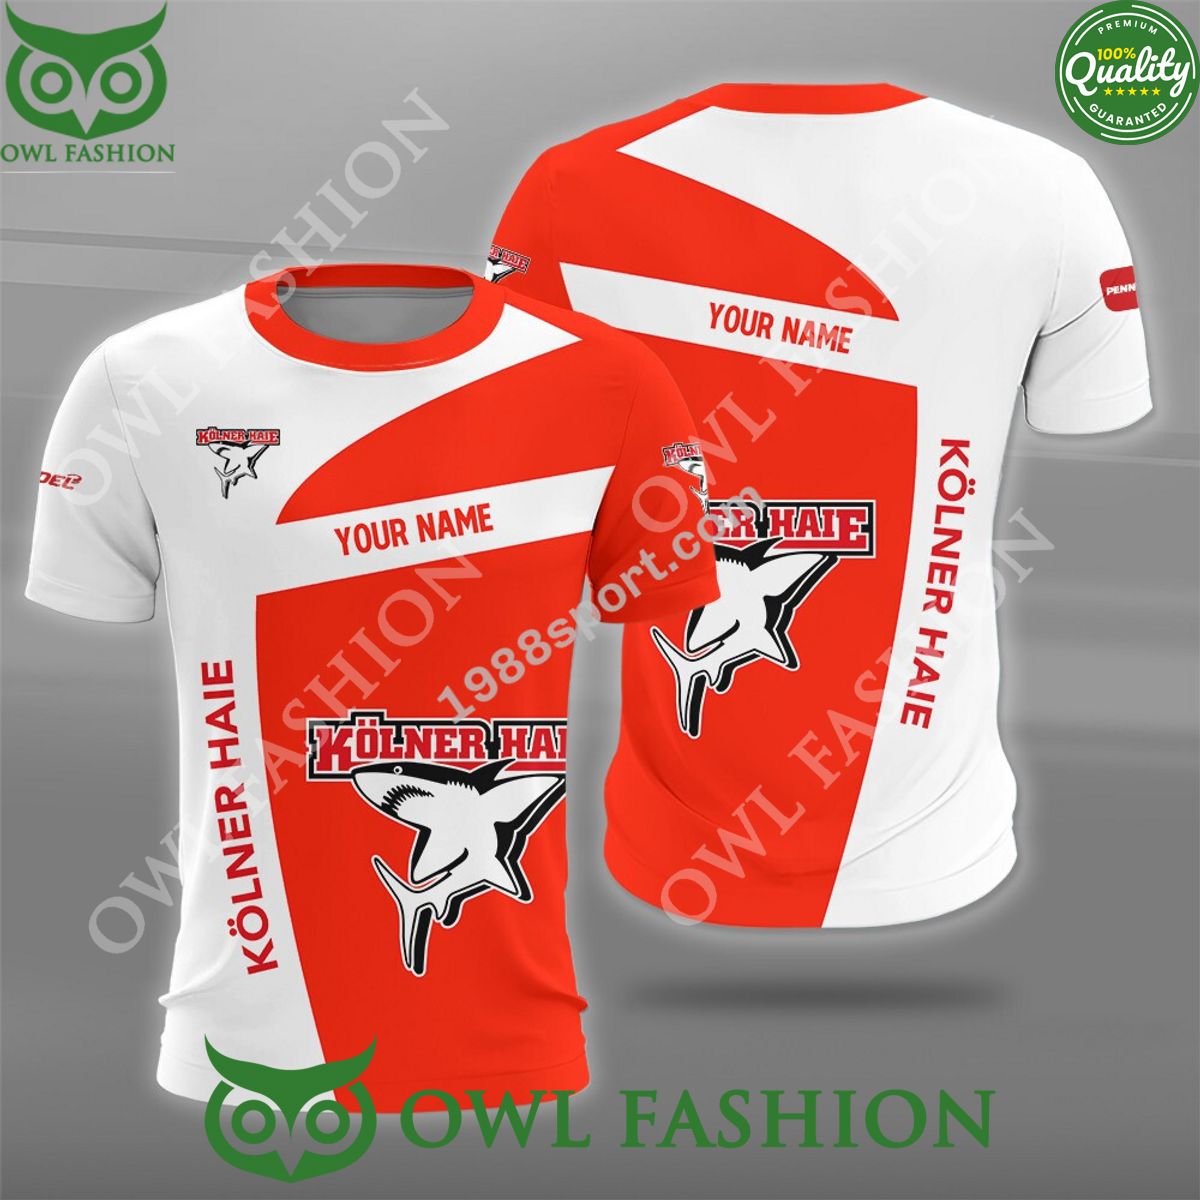 deutsche eishockey liga kolner haie hockey custom name polo shirt 1 vwafy.jpg